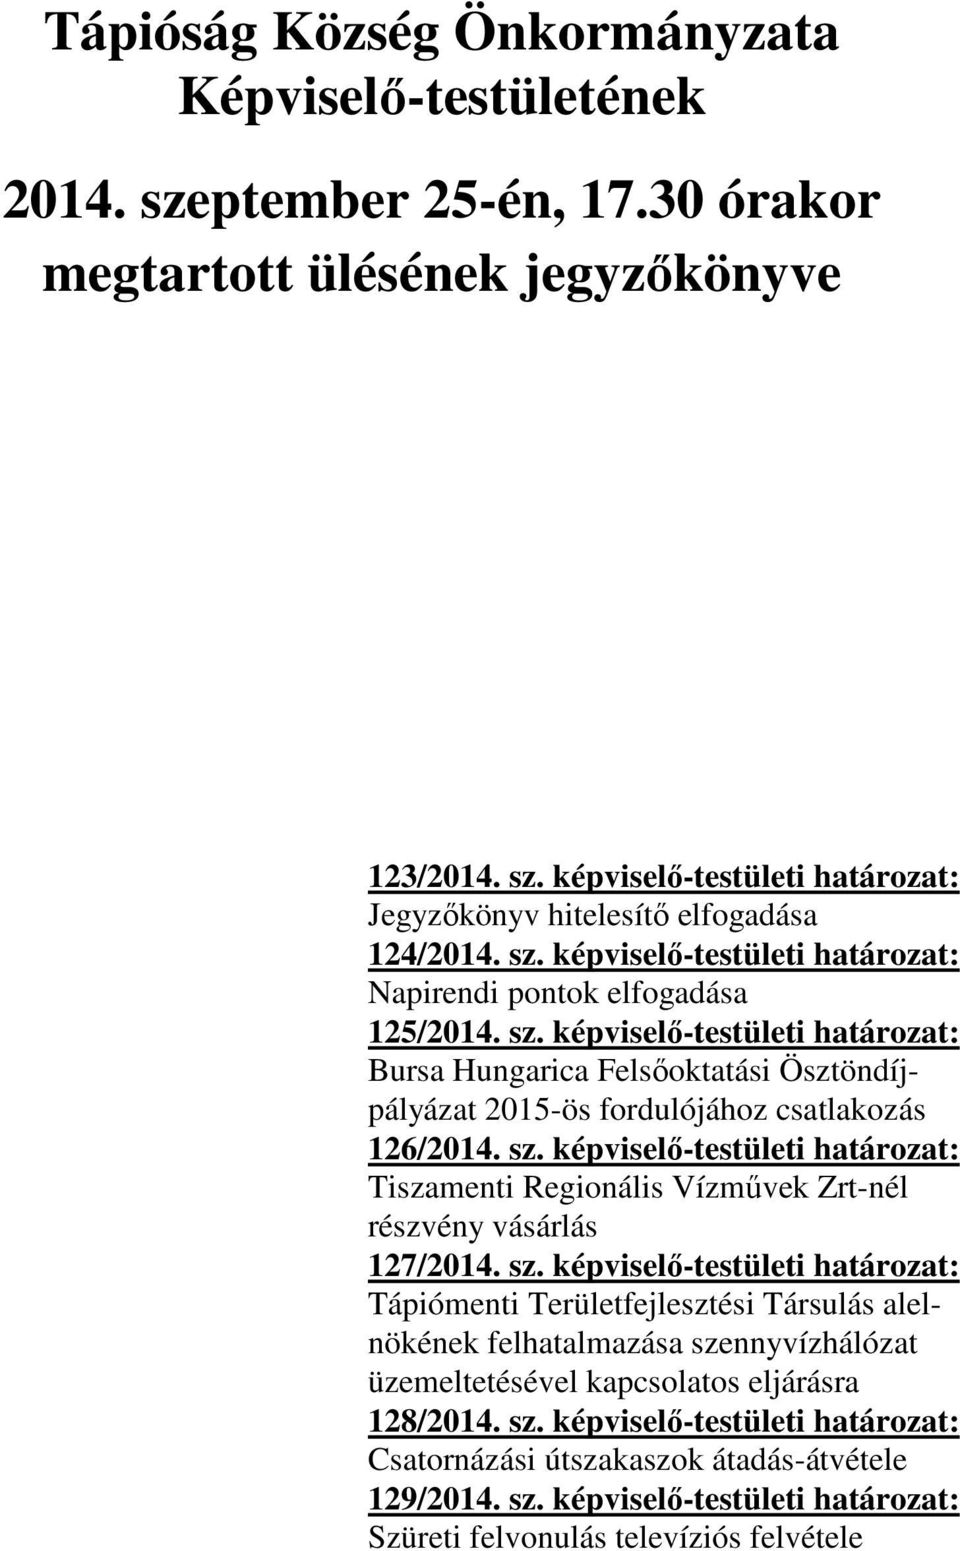 sz. képviselő-testületi határozat: Tiszamenti Regionális Vízművek Zrt-nél részvény vásárlás 127/2014. sz.